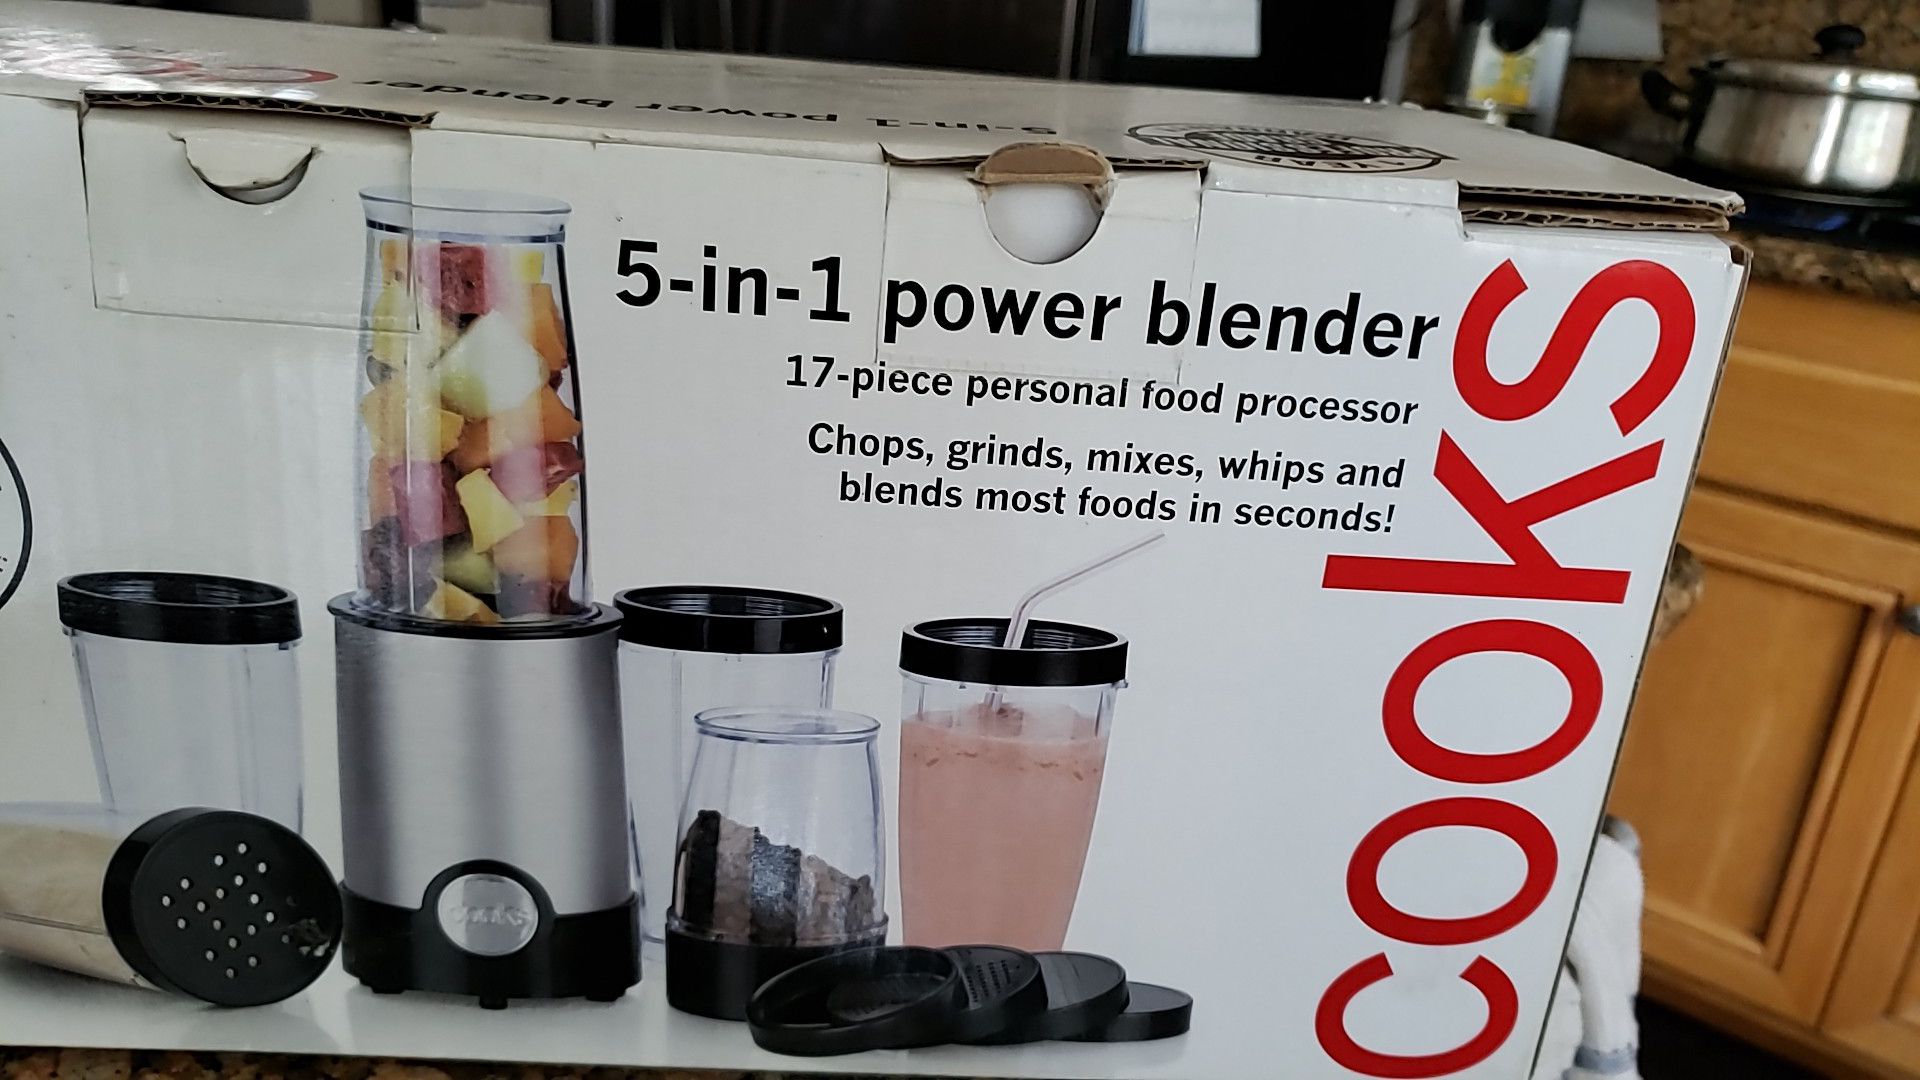 Blender Cooks brand